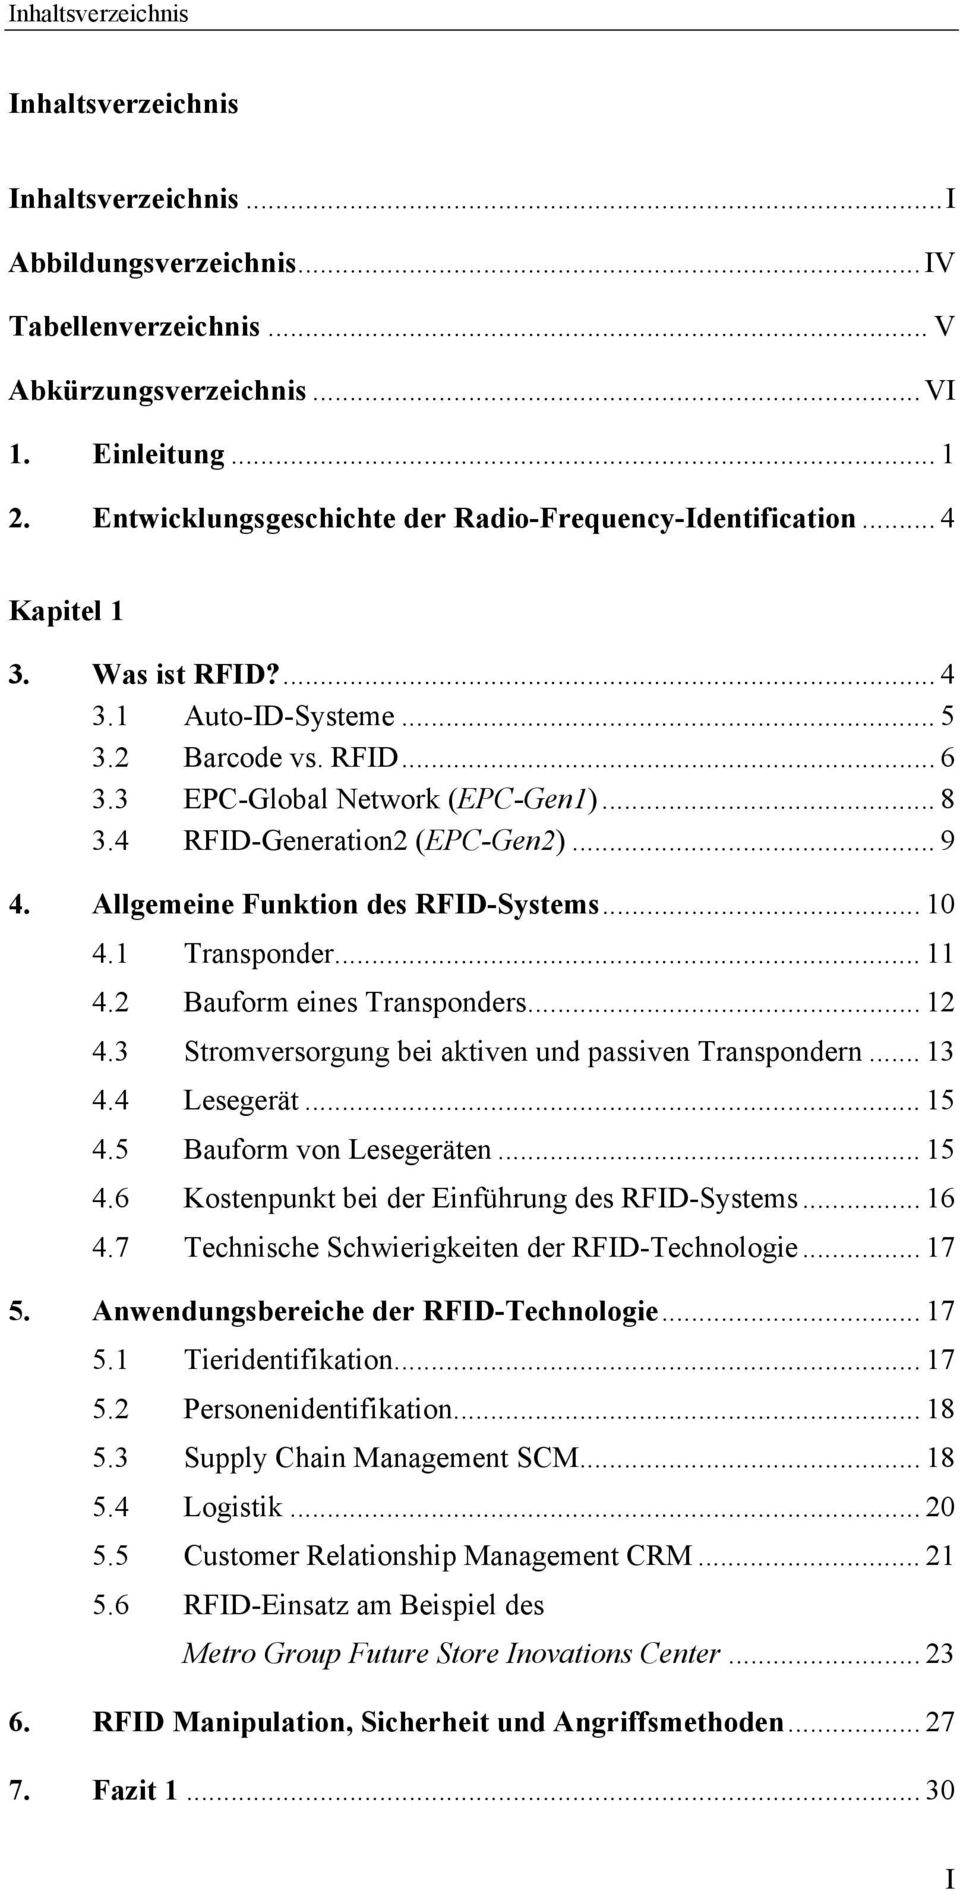 4 RFID-Generation2 (EPC-Gen2)... 9 4. Allgemeine Funktion des RFID-Systems... 10 4.1 Transponder... 11 4.2 Bauform eines Transponders... 12 4.3 Stromversorgung bei aktiven und passiven Transpondern.